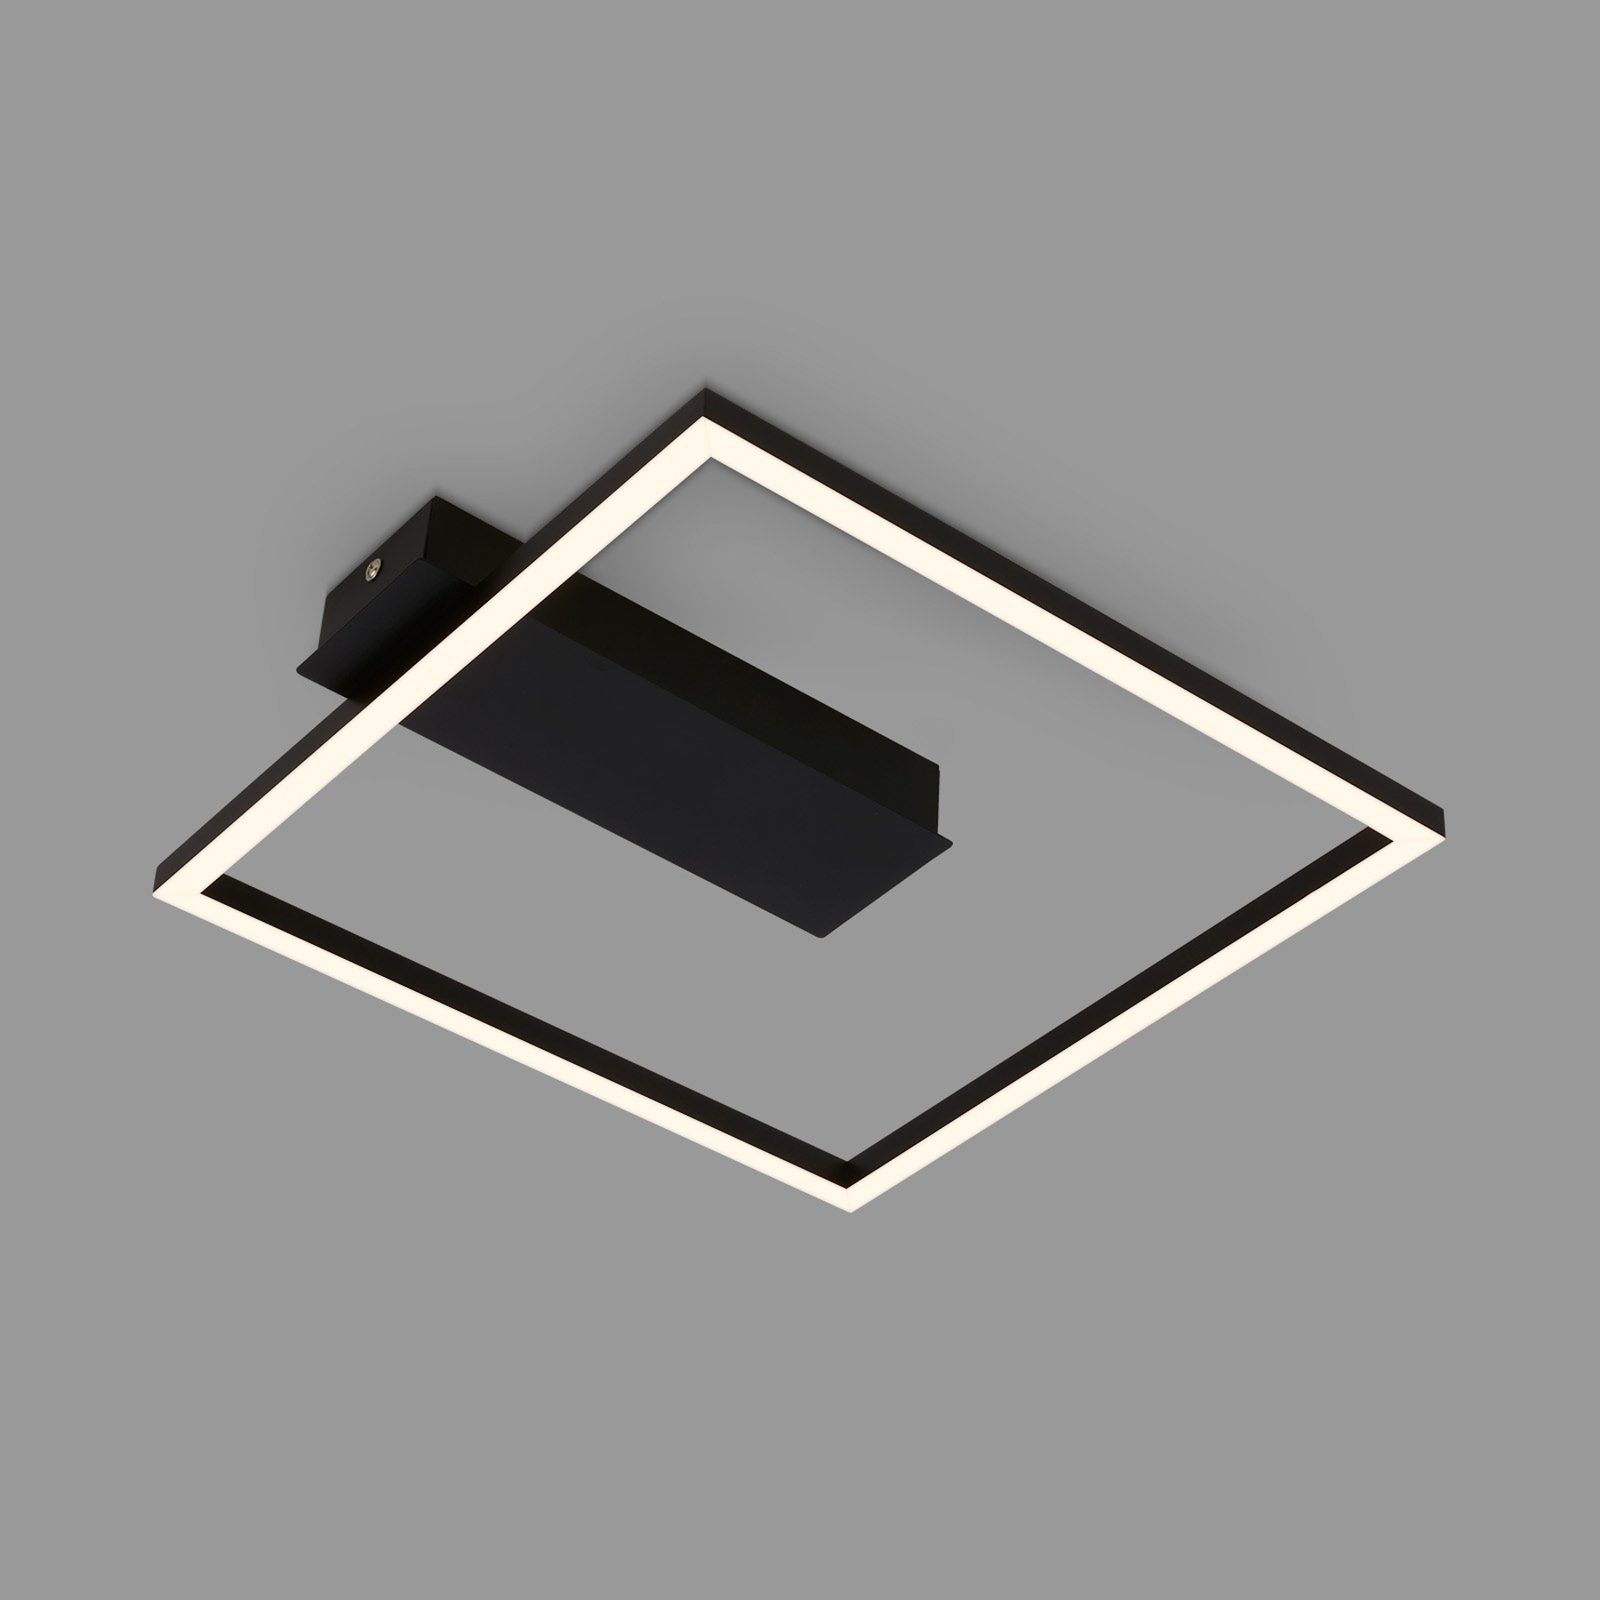 3771 LED ceiling light in a frame shape, black